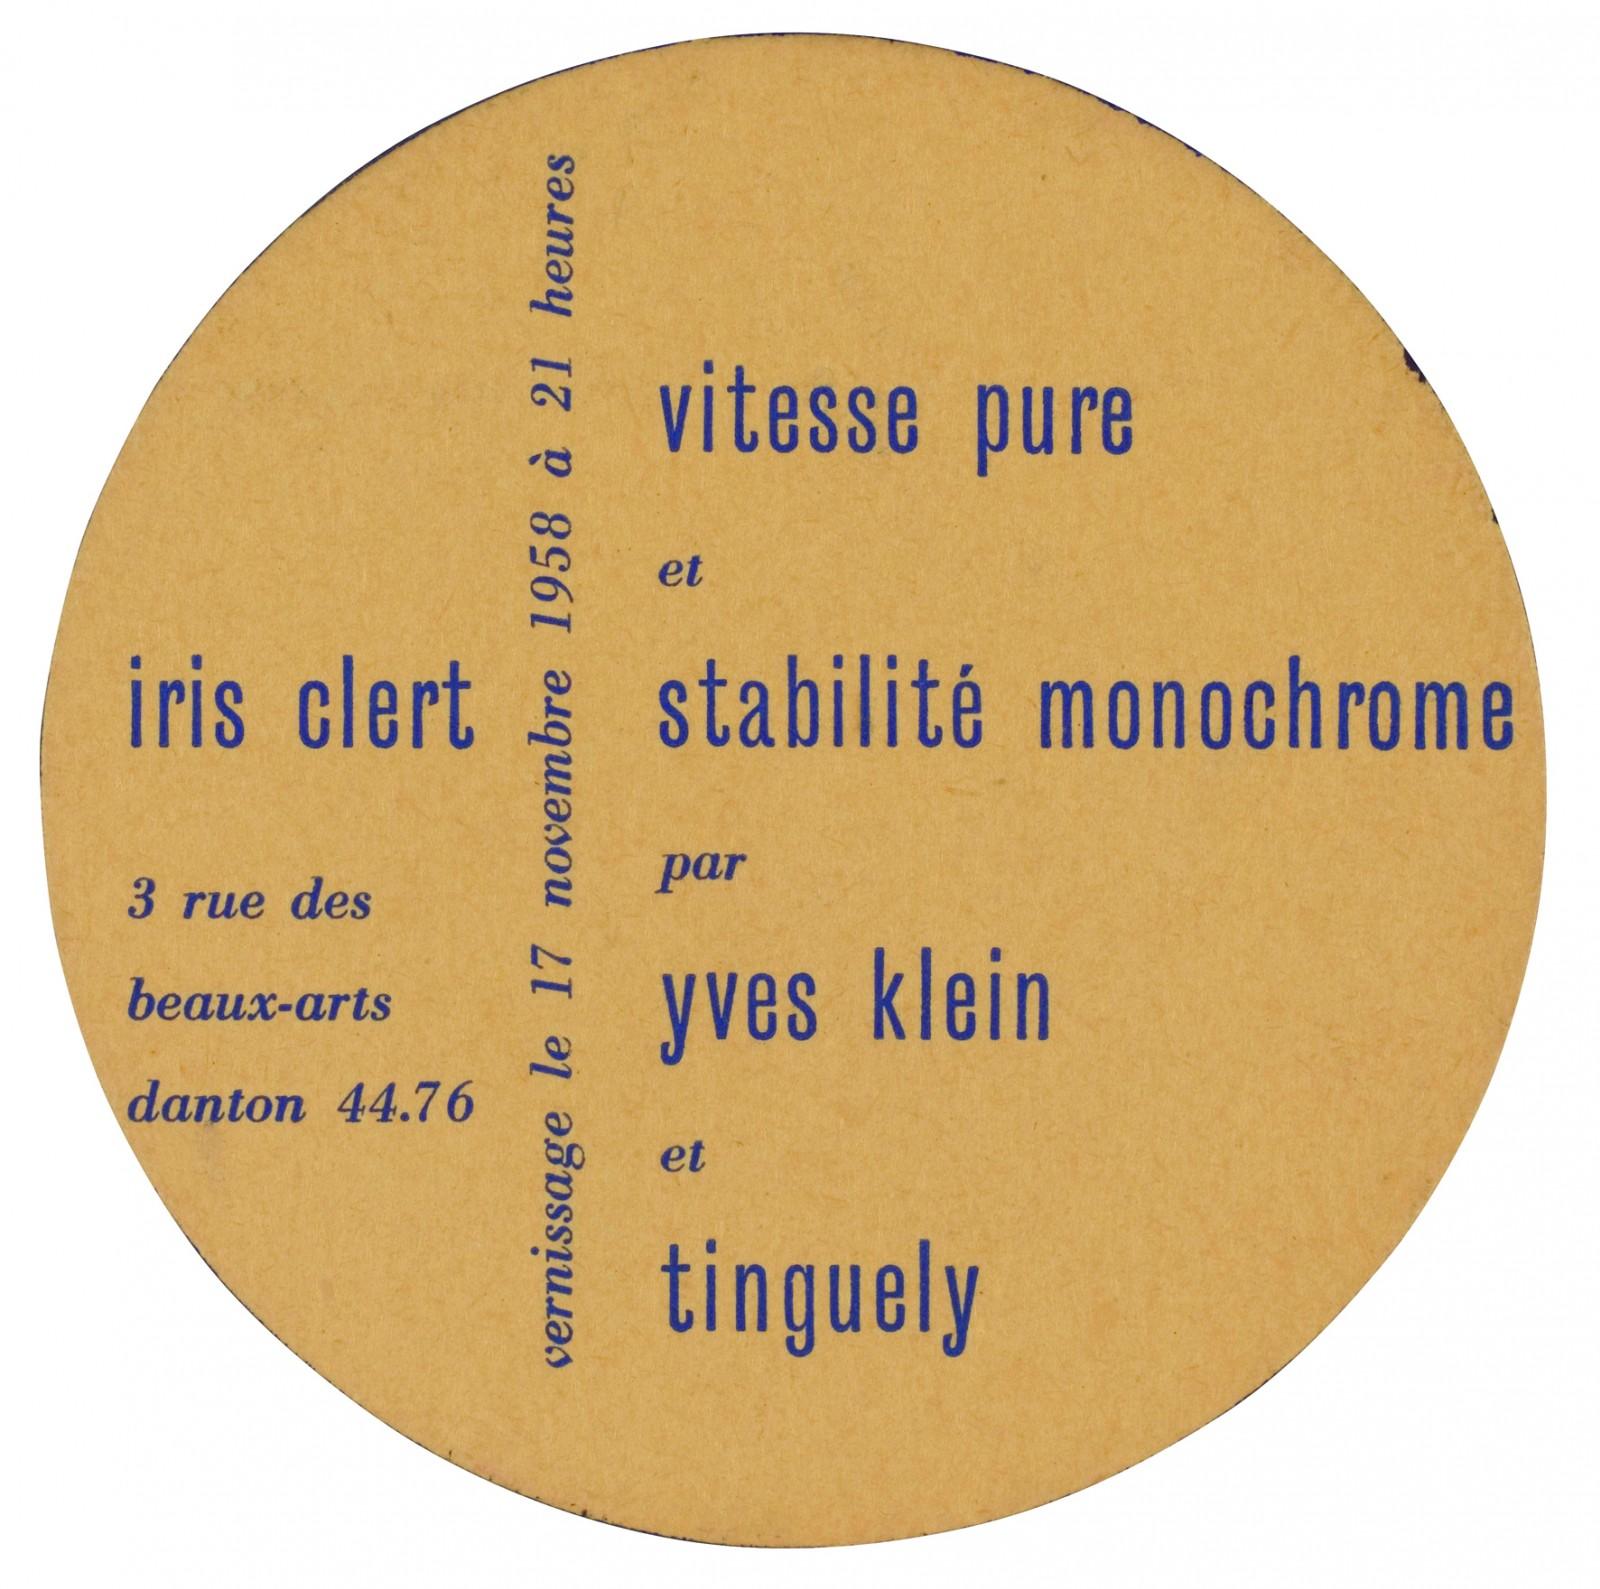 Invitation card of the exhibition "Vitesse pure et stabilité monochrome par Yves Klein et Tinguely", Iris Clert Gallery, Paris, 1959